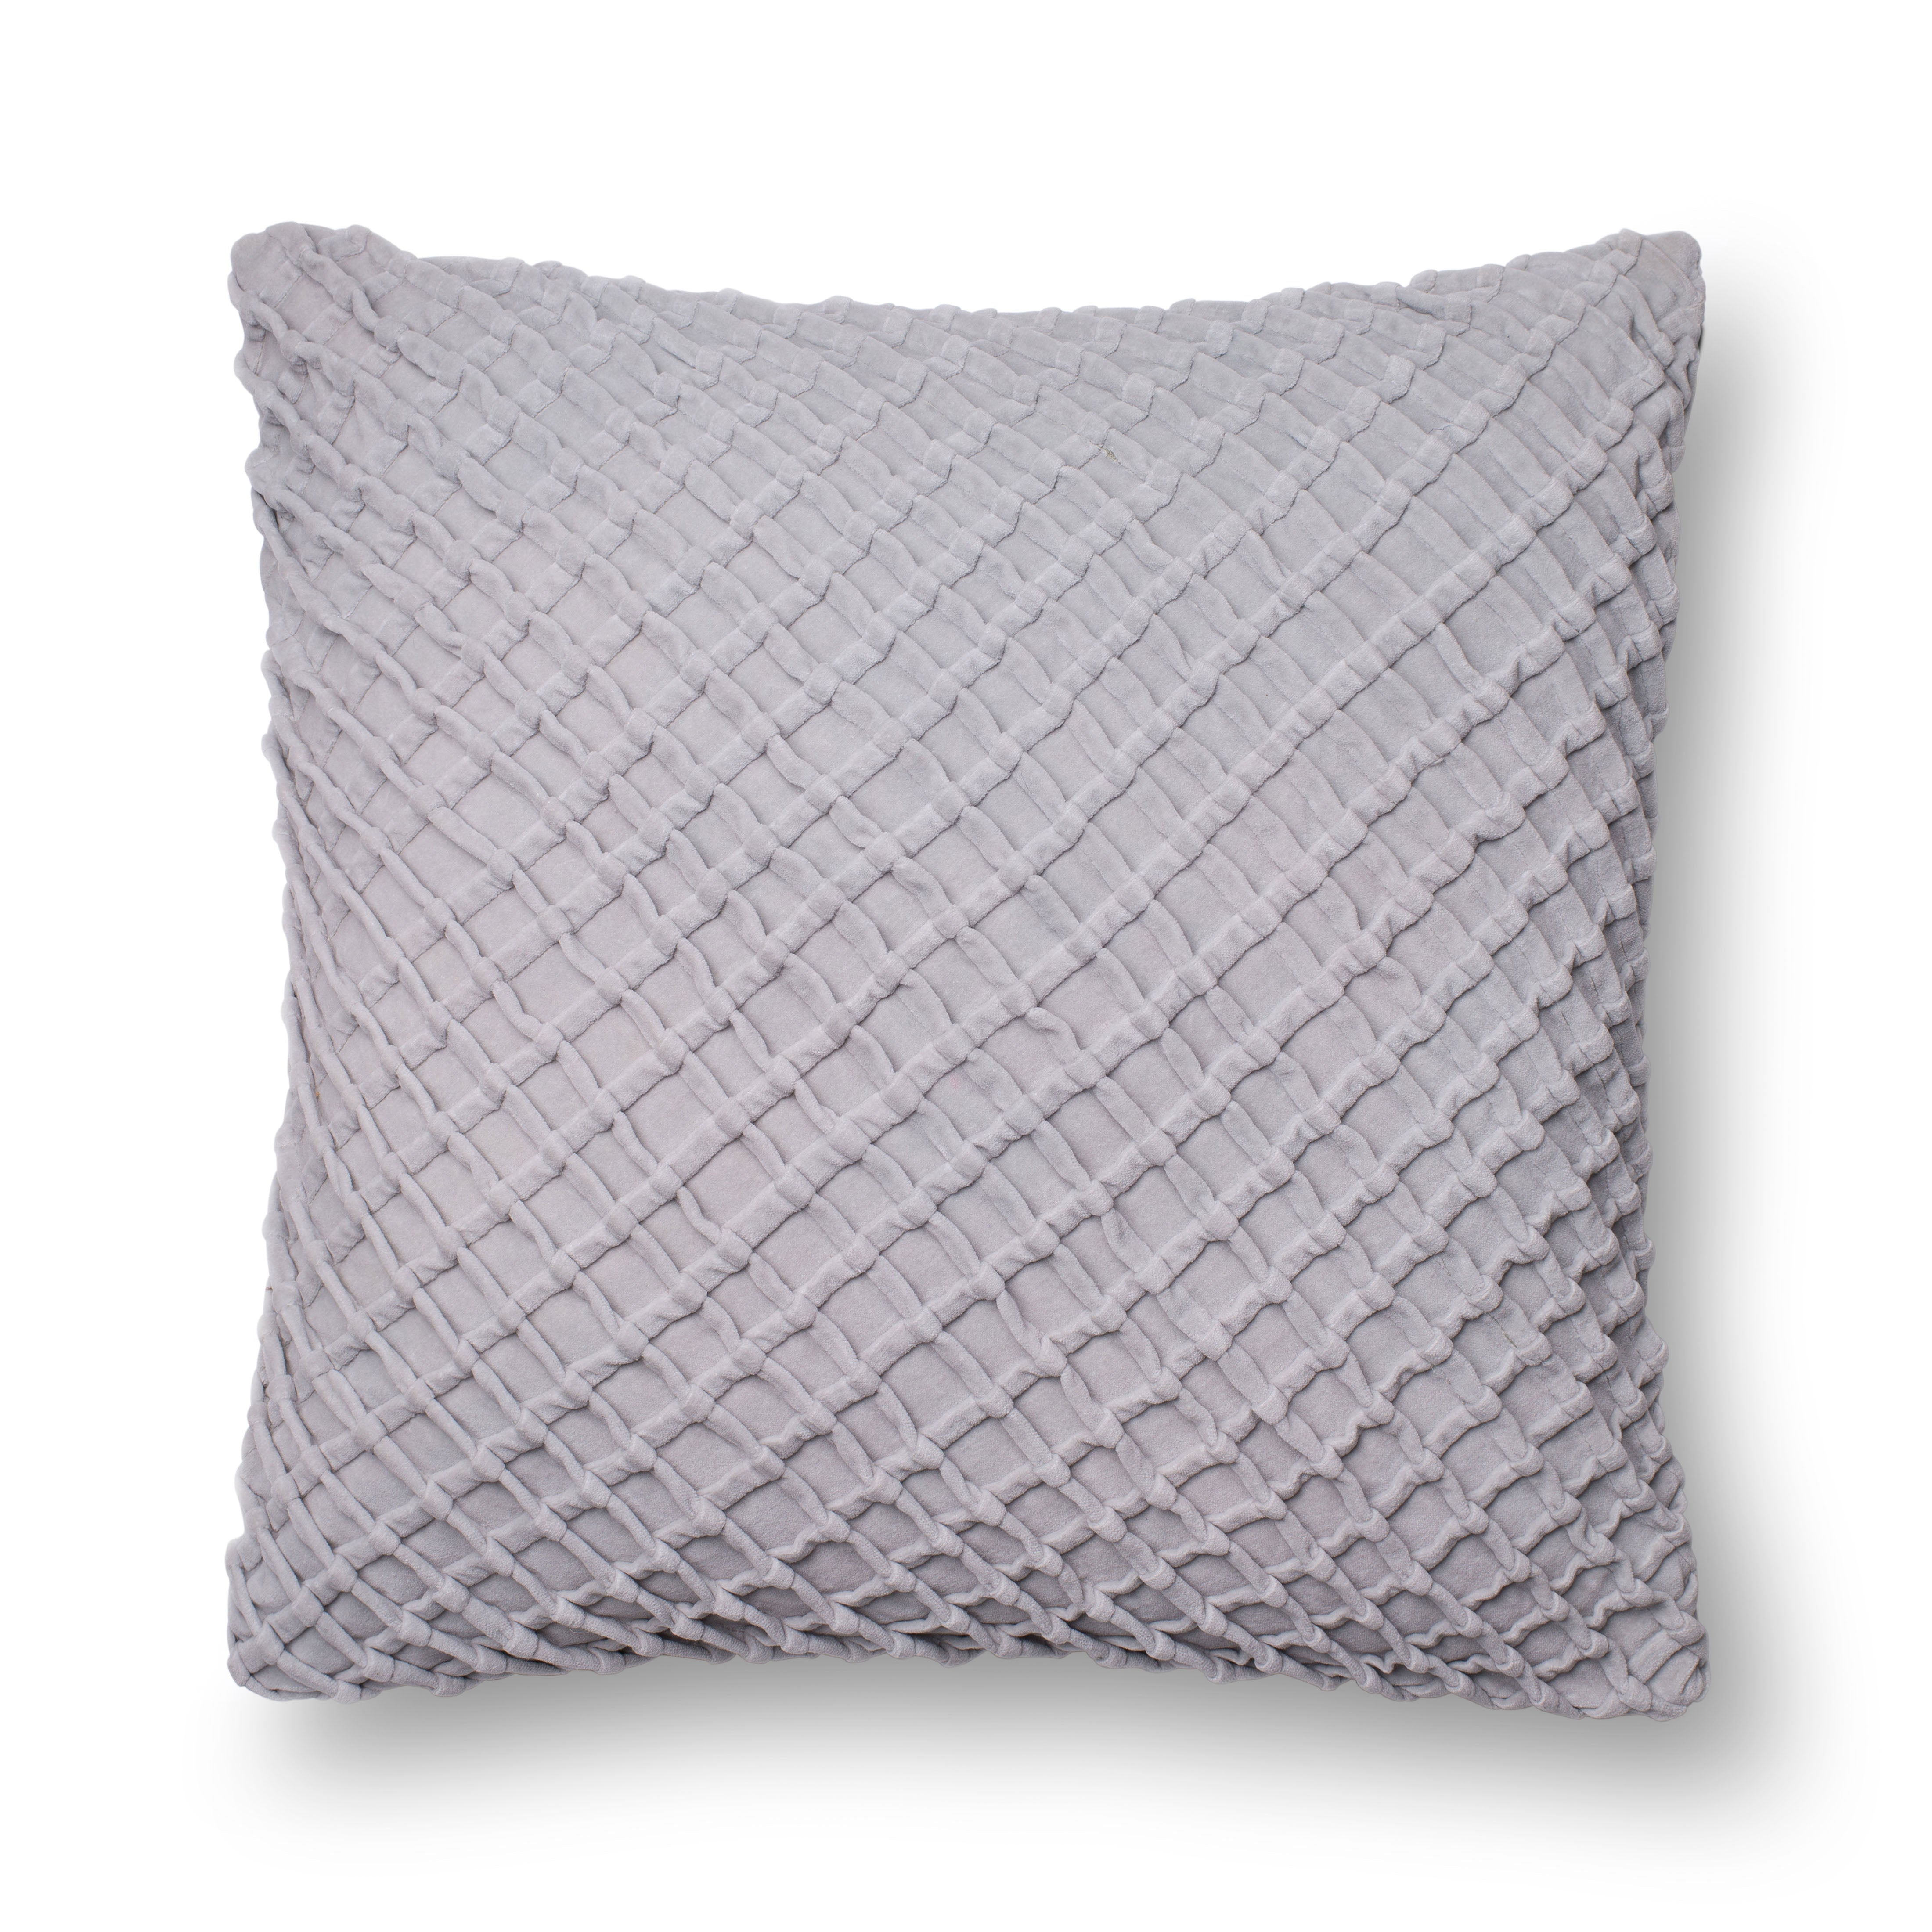 P0125 Grey Pillow